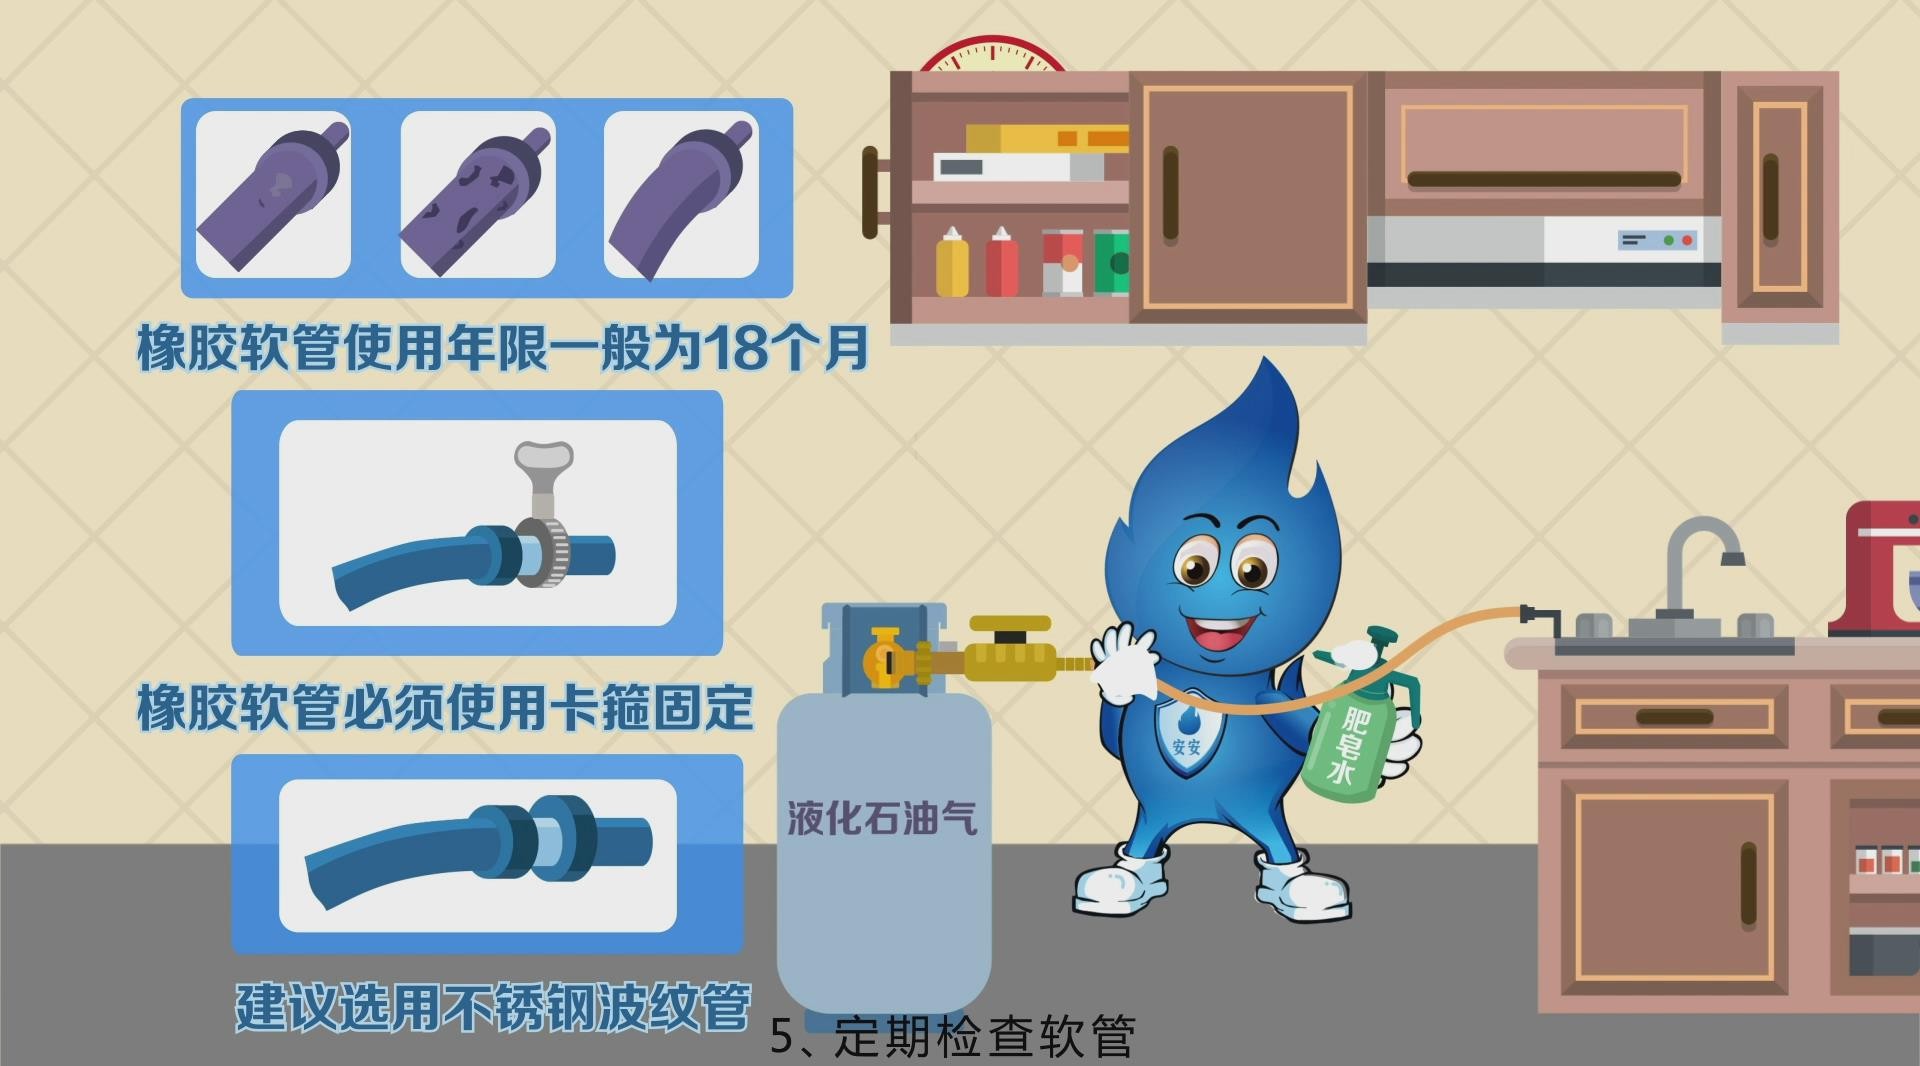 MG动画——瓶装液化气安全使用注意事项 